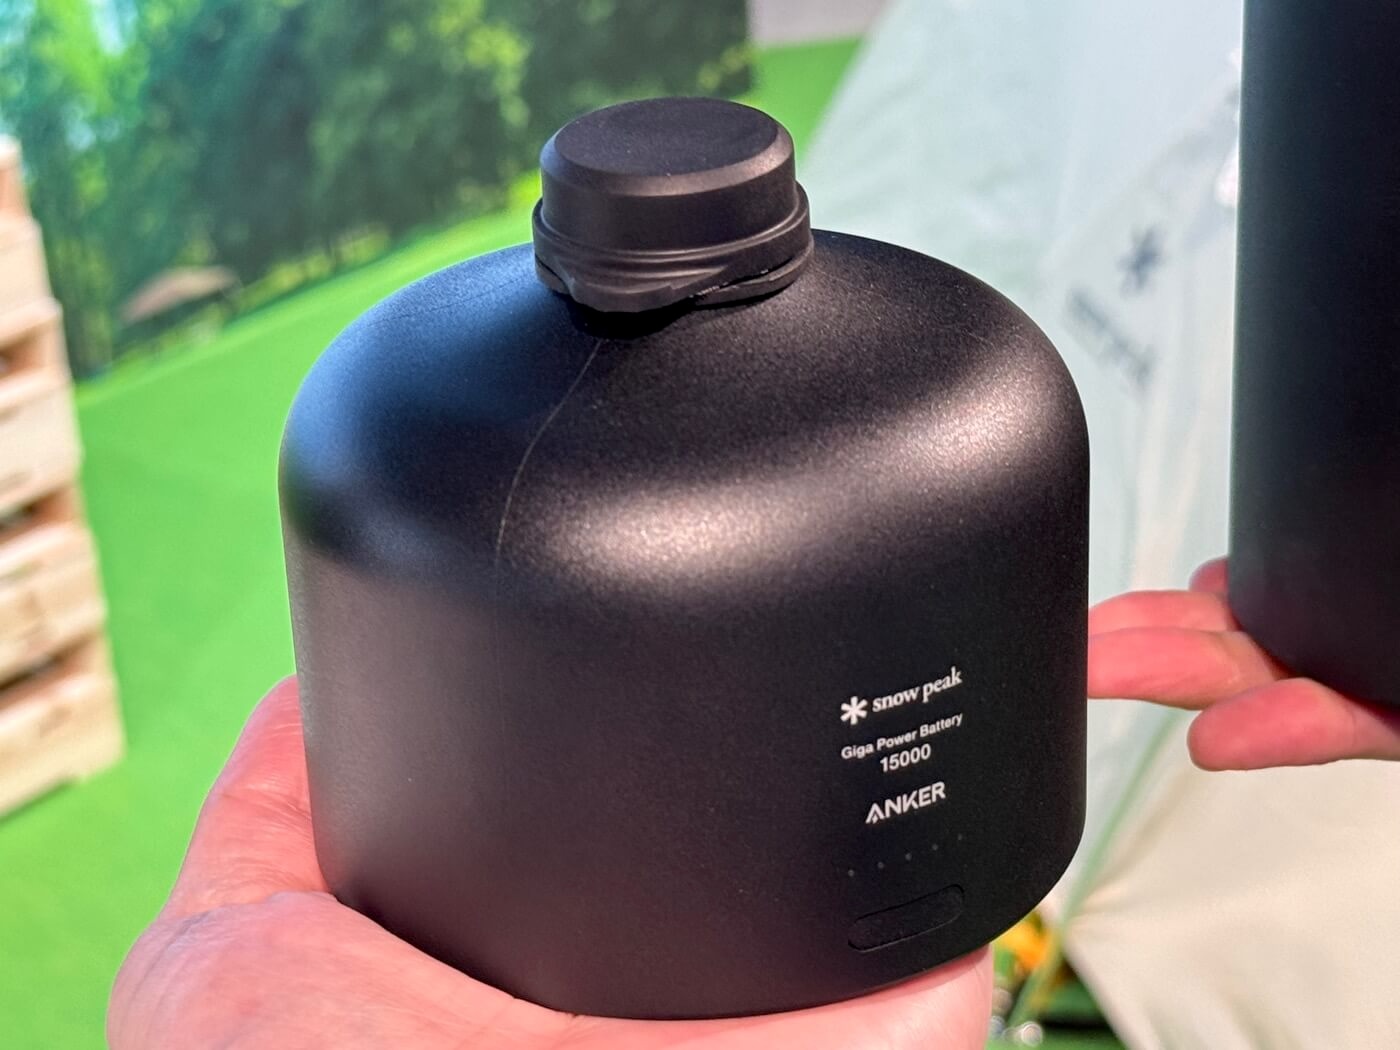 Anker、スノーピークとコラボしたアウトドア用モバイルバッテリー｢ギガパワーバッテリー｣シリーズを発表 ｰ ガス缶形状が特徴で来夏発売予定